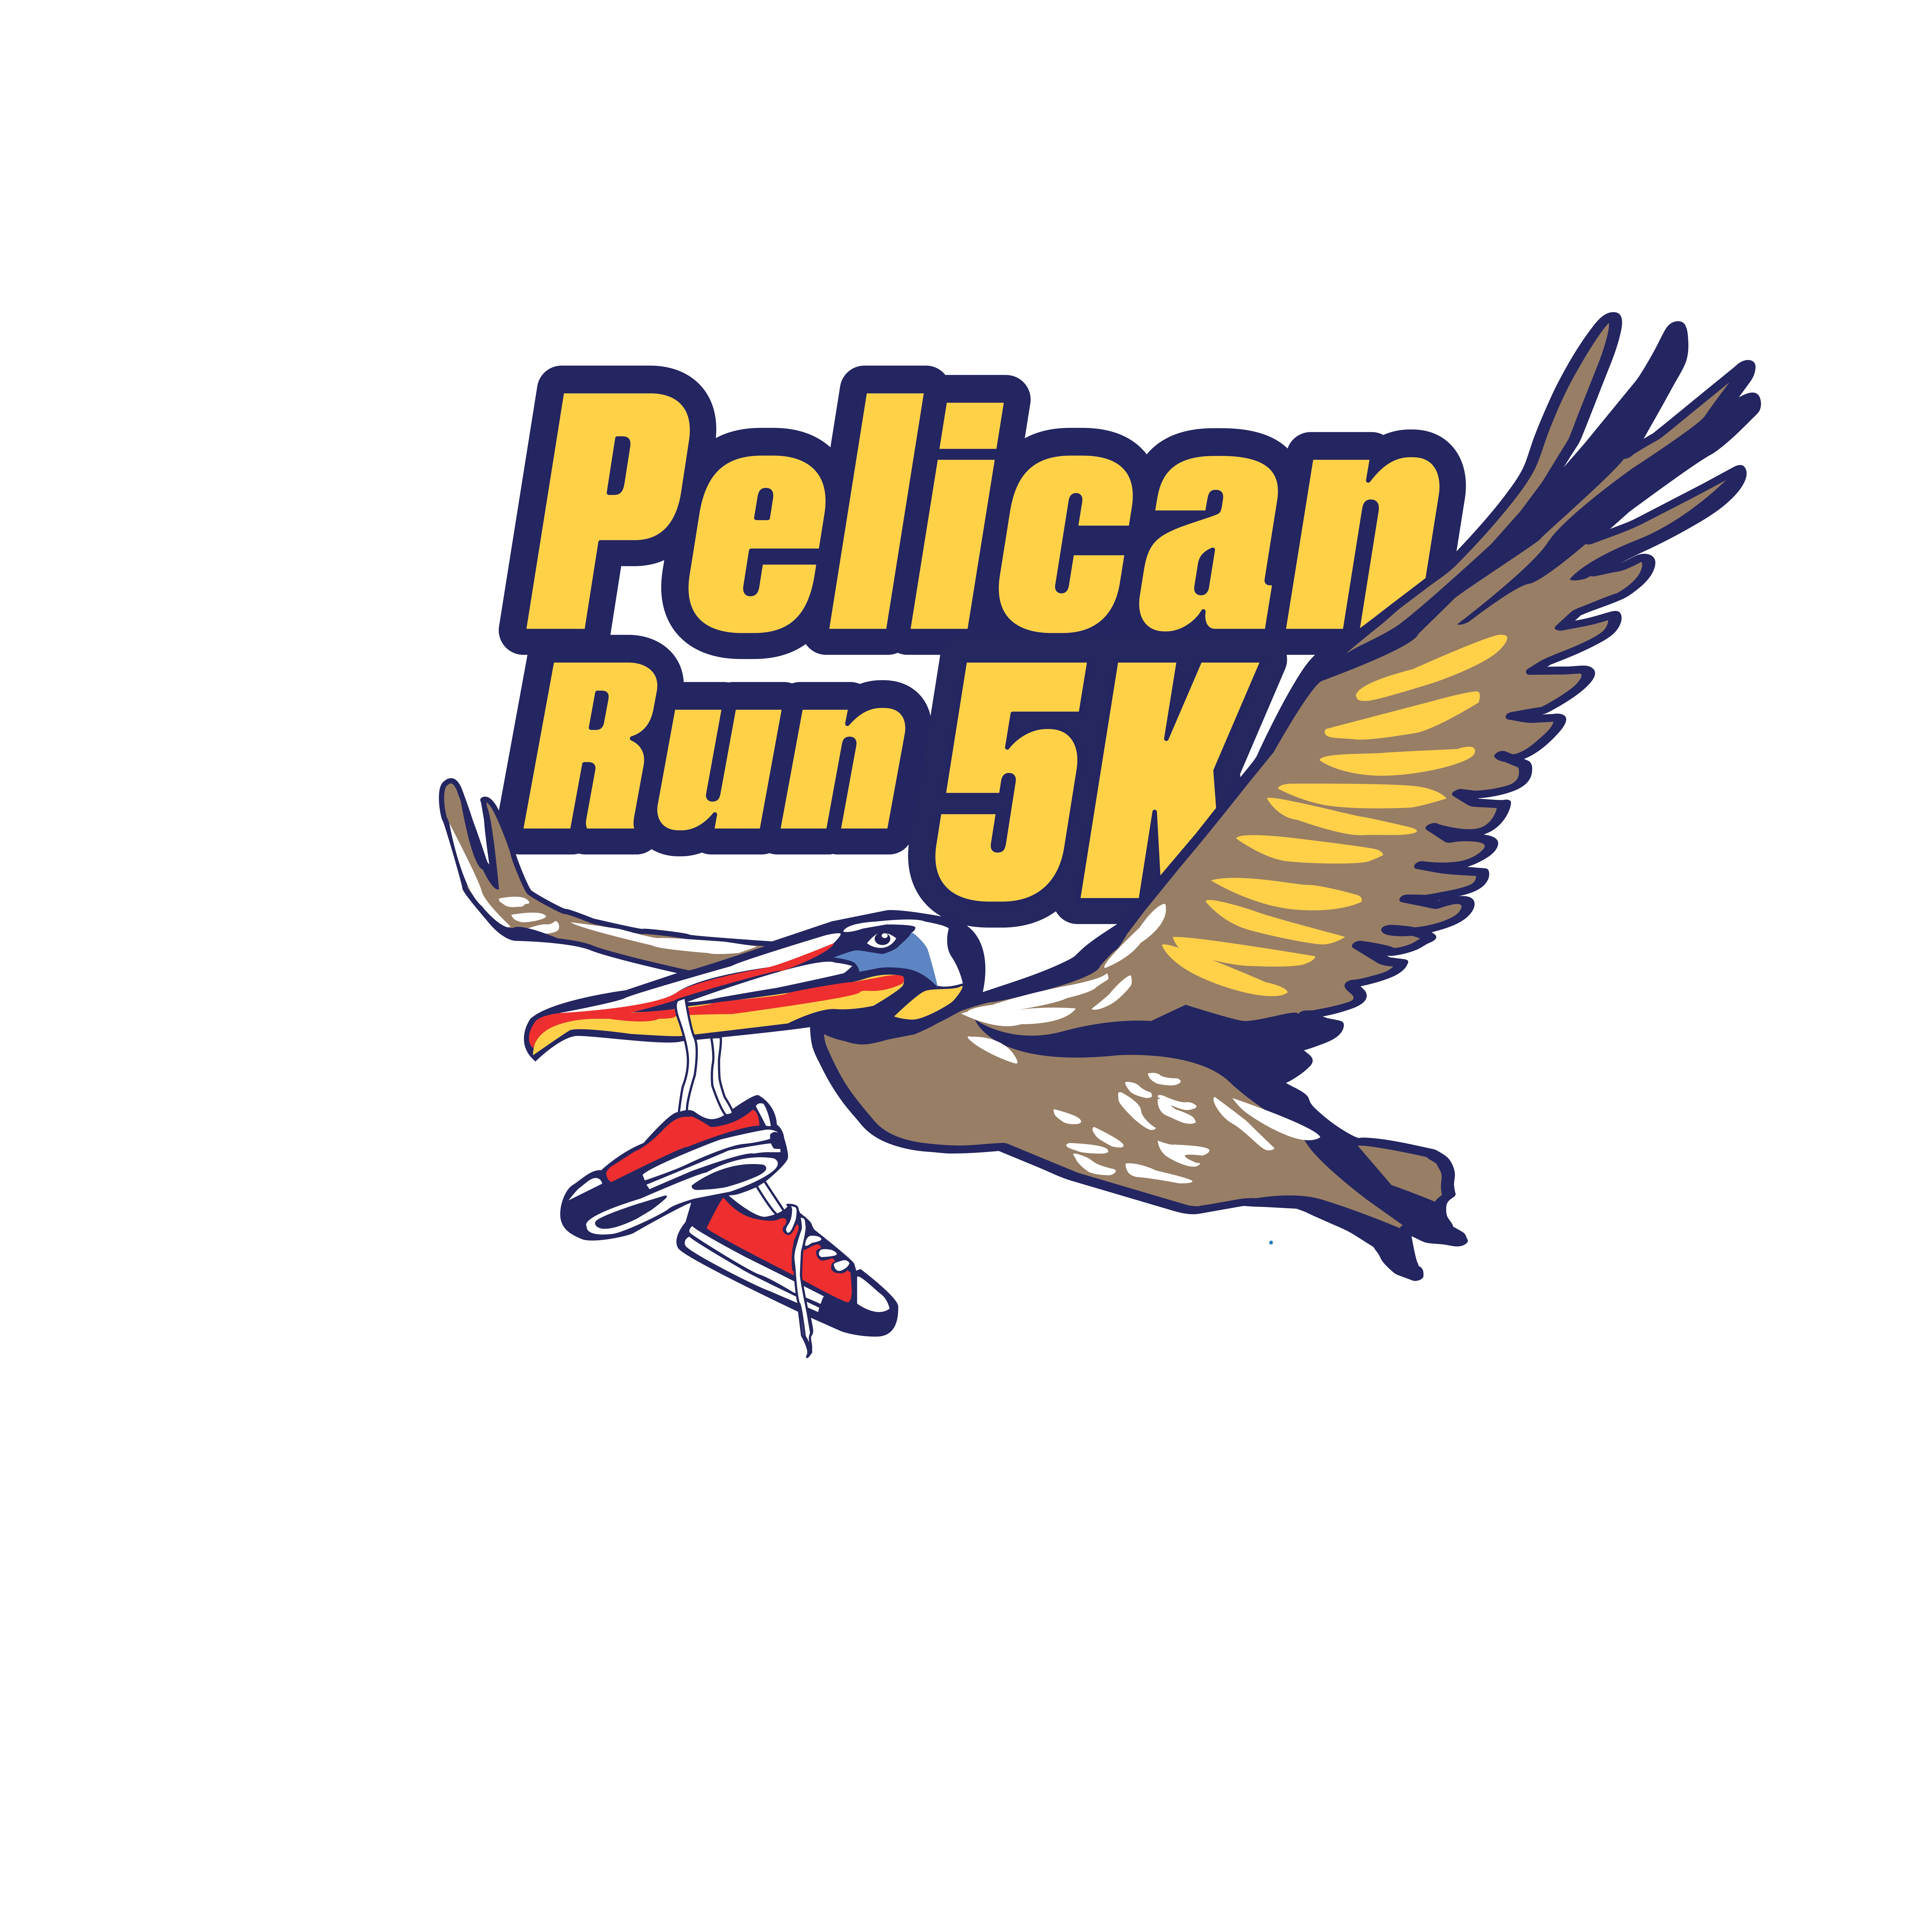 Pelican Run 5K logo on RaceRaves